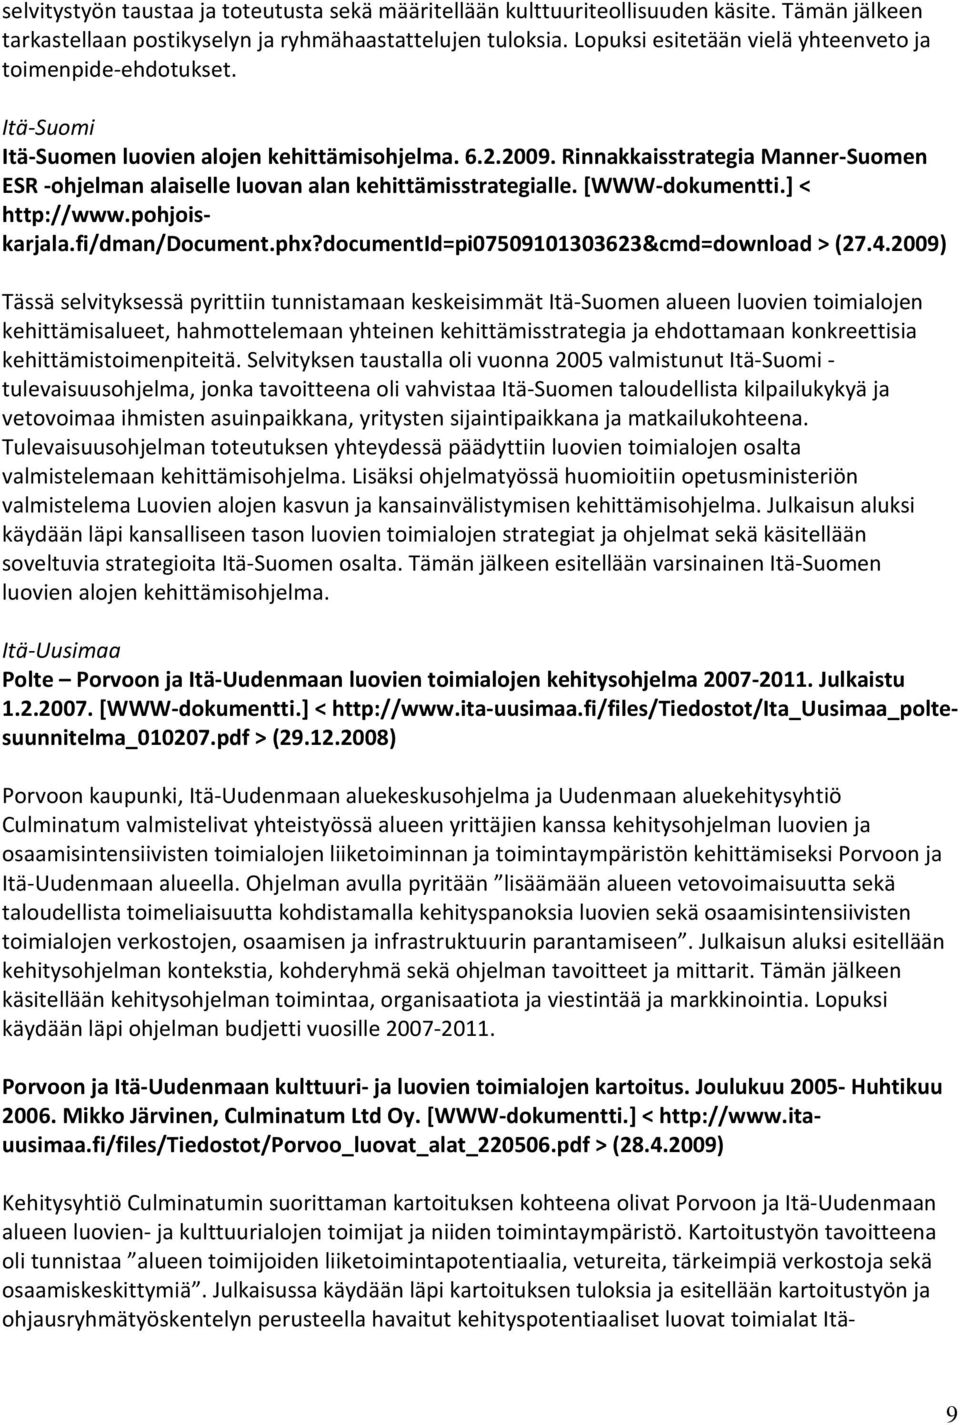 Rinnakkaisstrategia Manner-Suomen ESR -ohjelman alaiselle luovan alan kehittämisstrategialle. [WWW-dokumentti.] < http://www.pohjoiskarjala.fi/dman/document.phx?